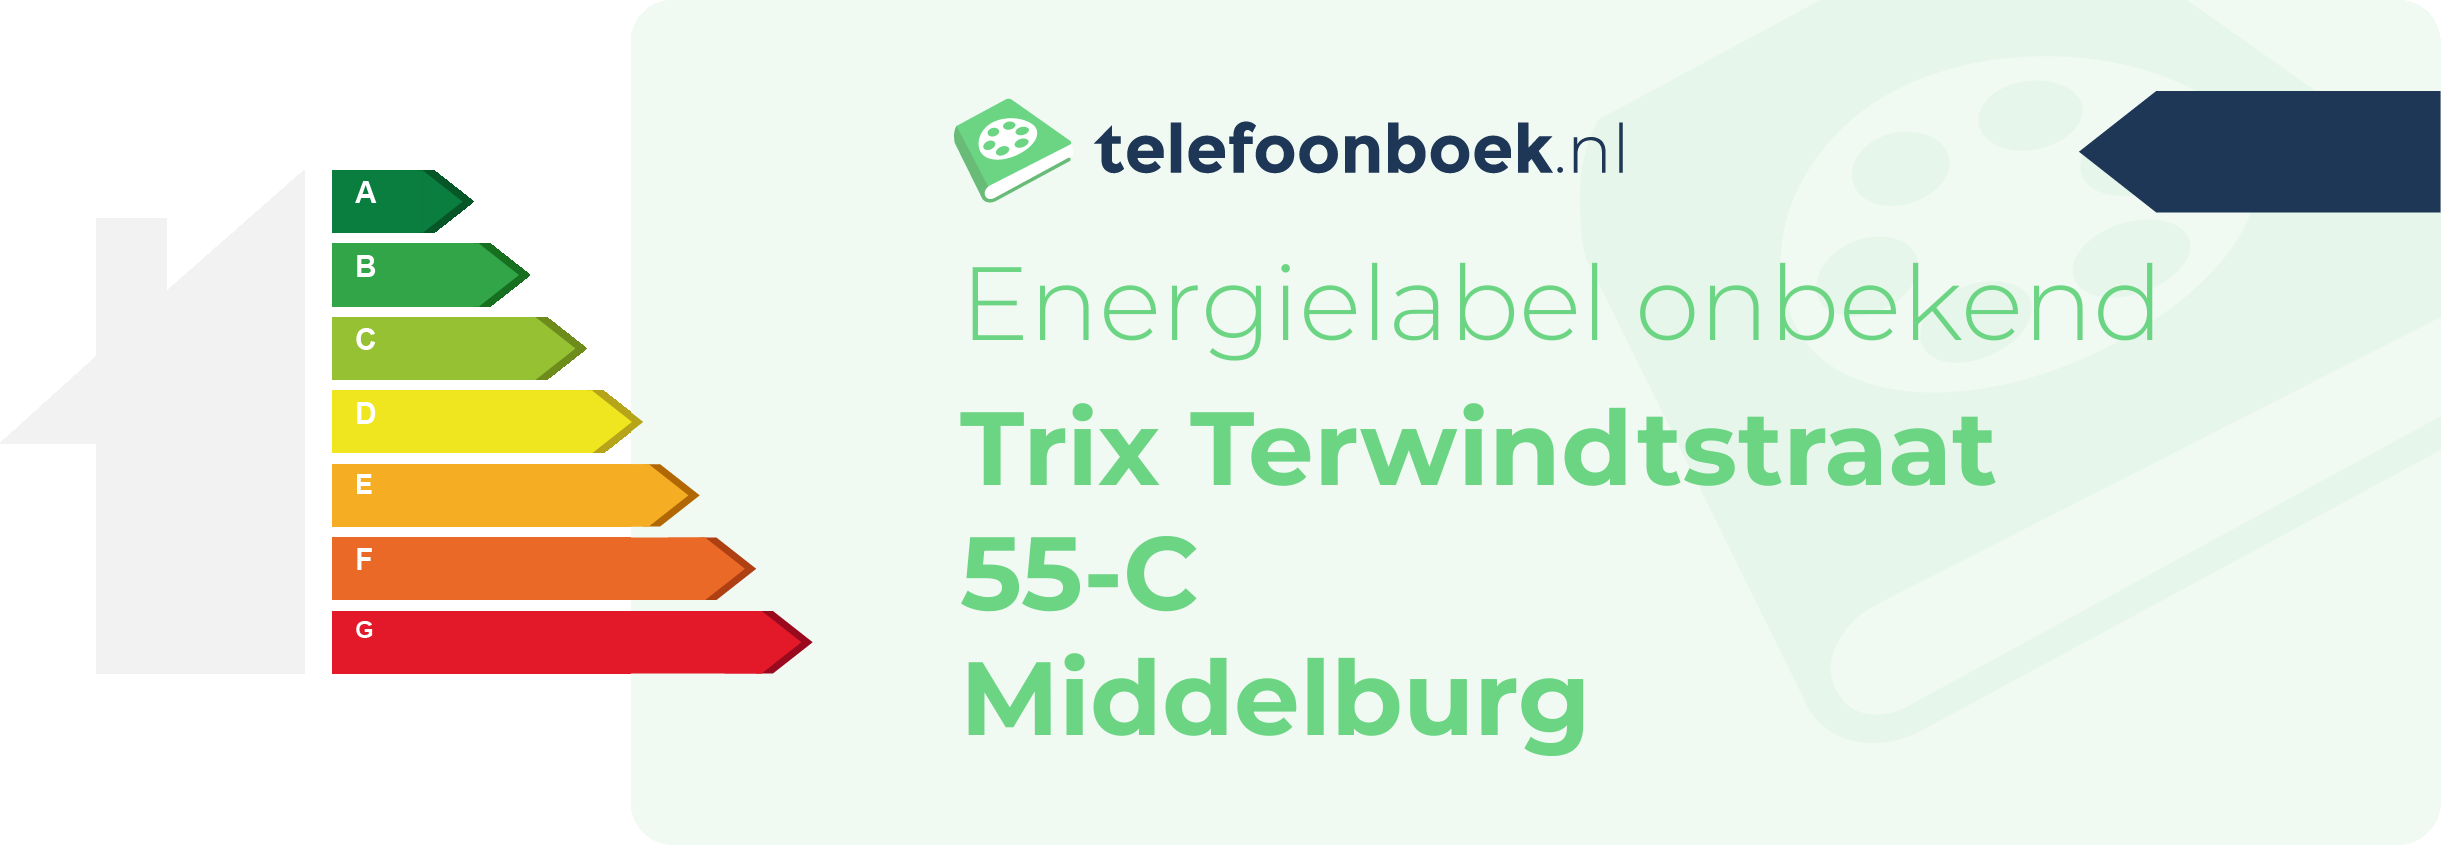 Energielabel Trix Terwindtstraat 55-C Middelburg